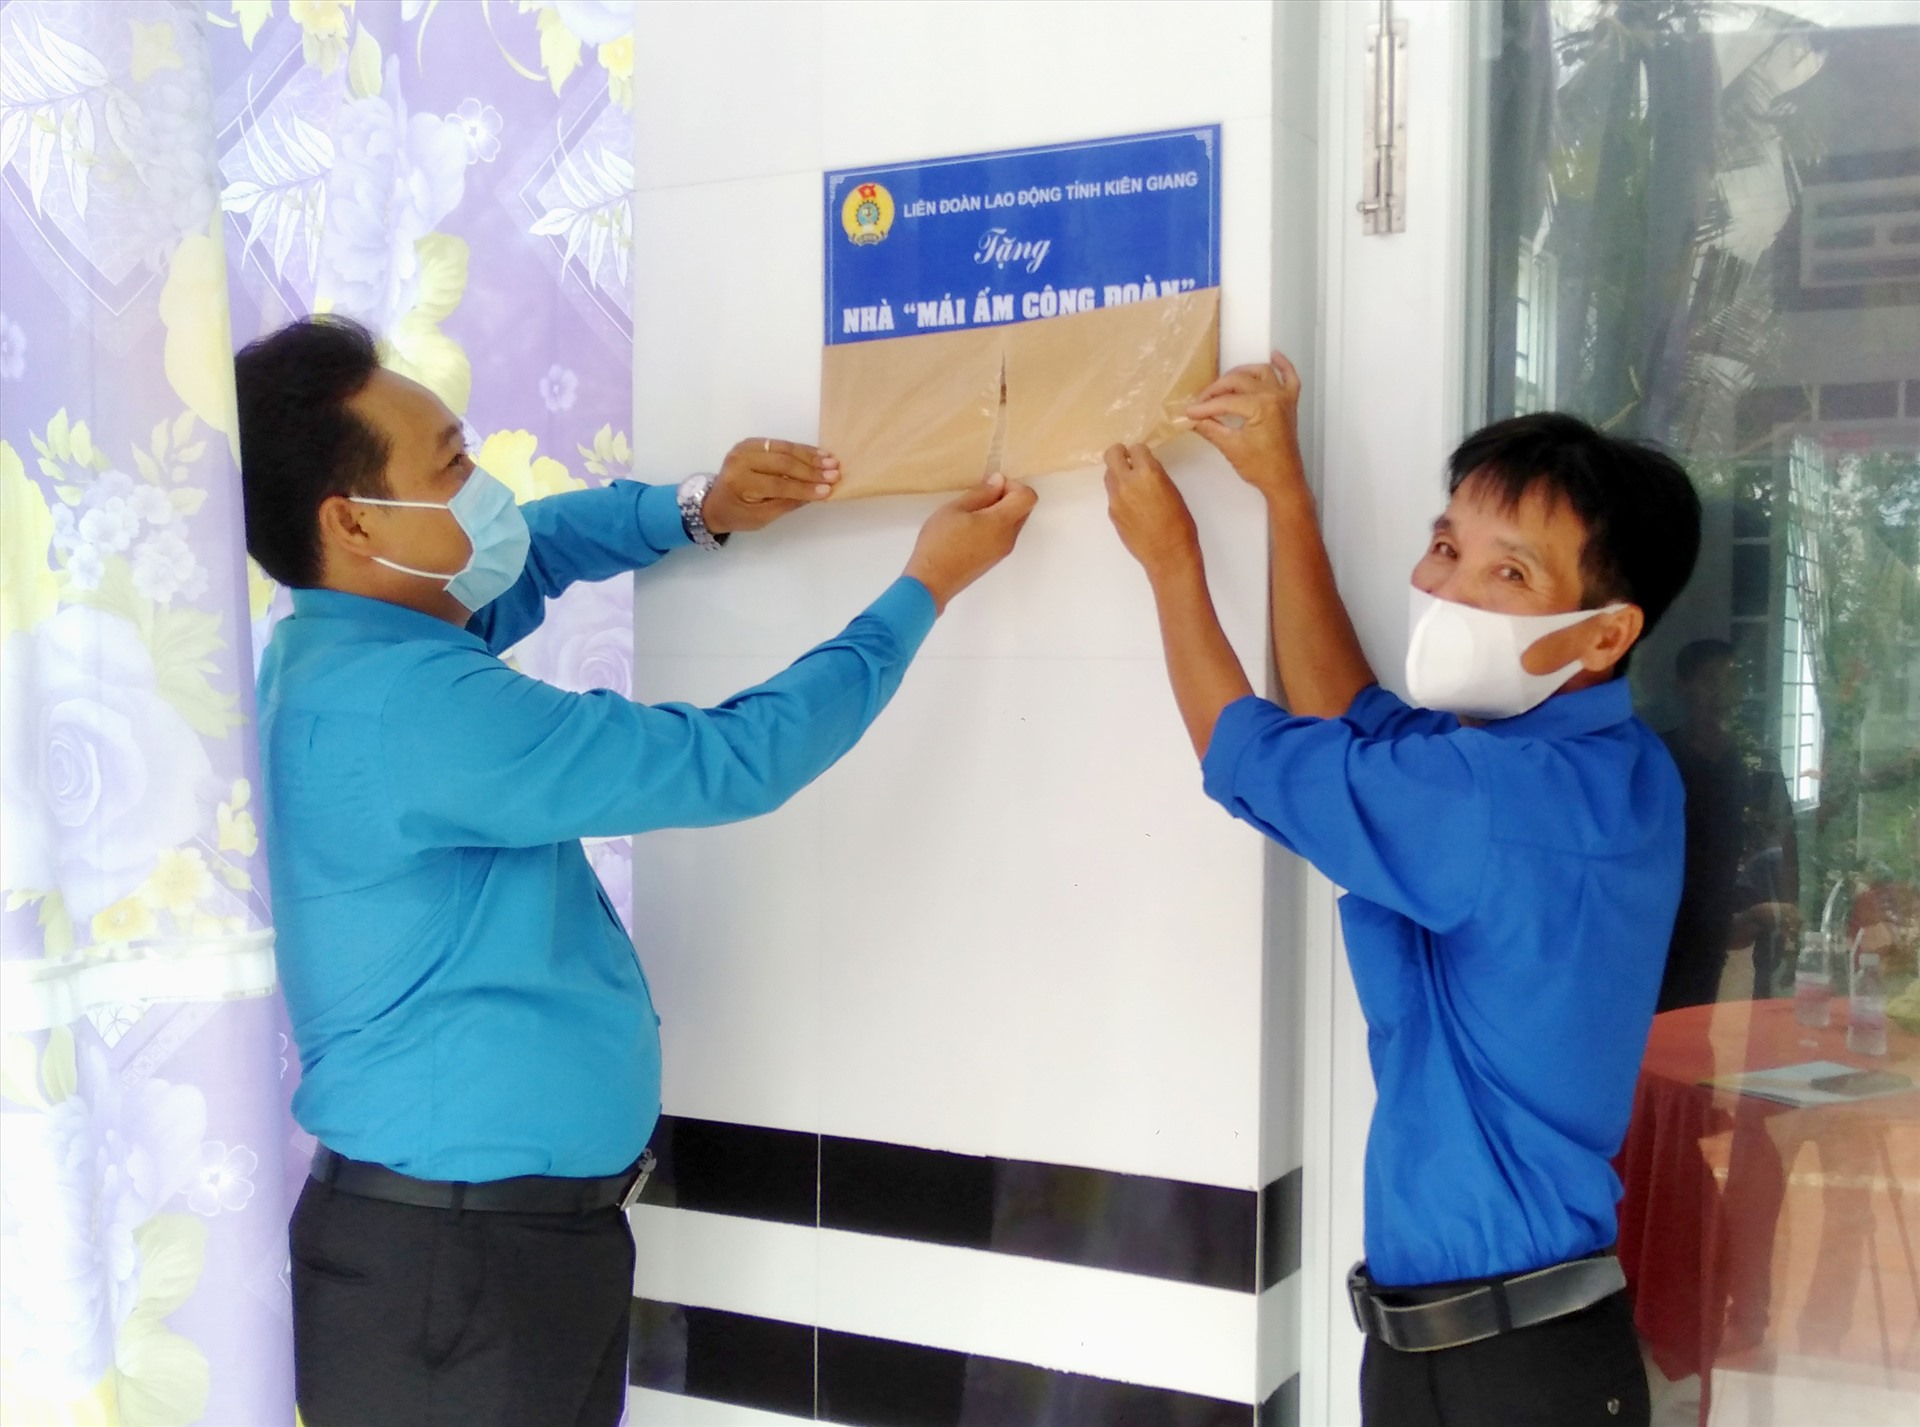 Ông Phạm Văn Đằng và đoàn viên Trần Quang Vinh thực hiện nghi thức khánh thành căn nhà. Ảnh: LT